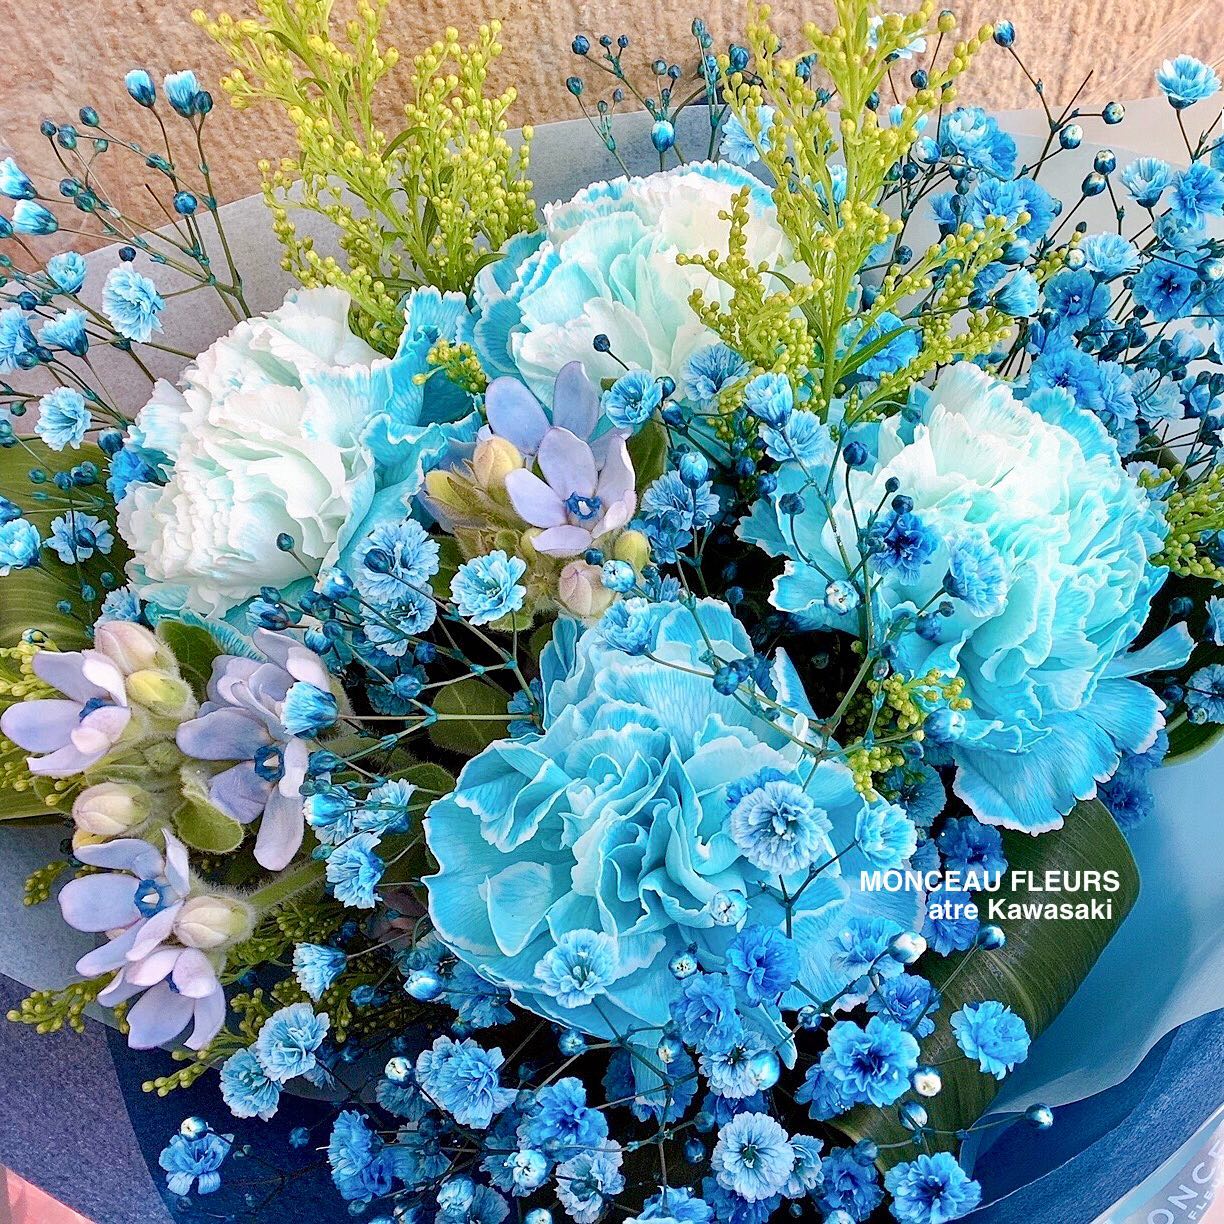 こちらは、
ブルーが の に
されるお花だそうですよ

お客様のリクエスト通り、 を
入れさせて頂きました

青いお花は、店頭でも いつも色んな種類が店頭に並ぶように
心掛けています

ブルーのお花をお探しのお客様は、是非！
当店にお立ち寄り下さいね^ ^

スタッフが も
お受け致します！


お気軽にお問い合わせください。
★★★★★★★★★★★★★★★
【モンソーフルール アトレ川崎店】
〒210-0007
神奈川県川崎市川崎区駅前本町26-1
アトレ川崎1F
TEL&FAX:044-200-6701
営業時間:10:00〜21:00
★★★★★★★★★★★★★★★
モンソーフルールはパリ発！
ヨーロッパ有数のフラワーチェーンブランドです。